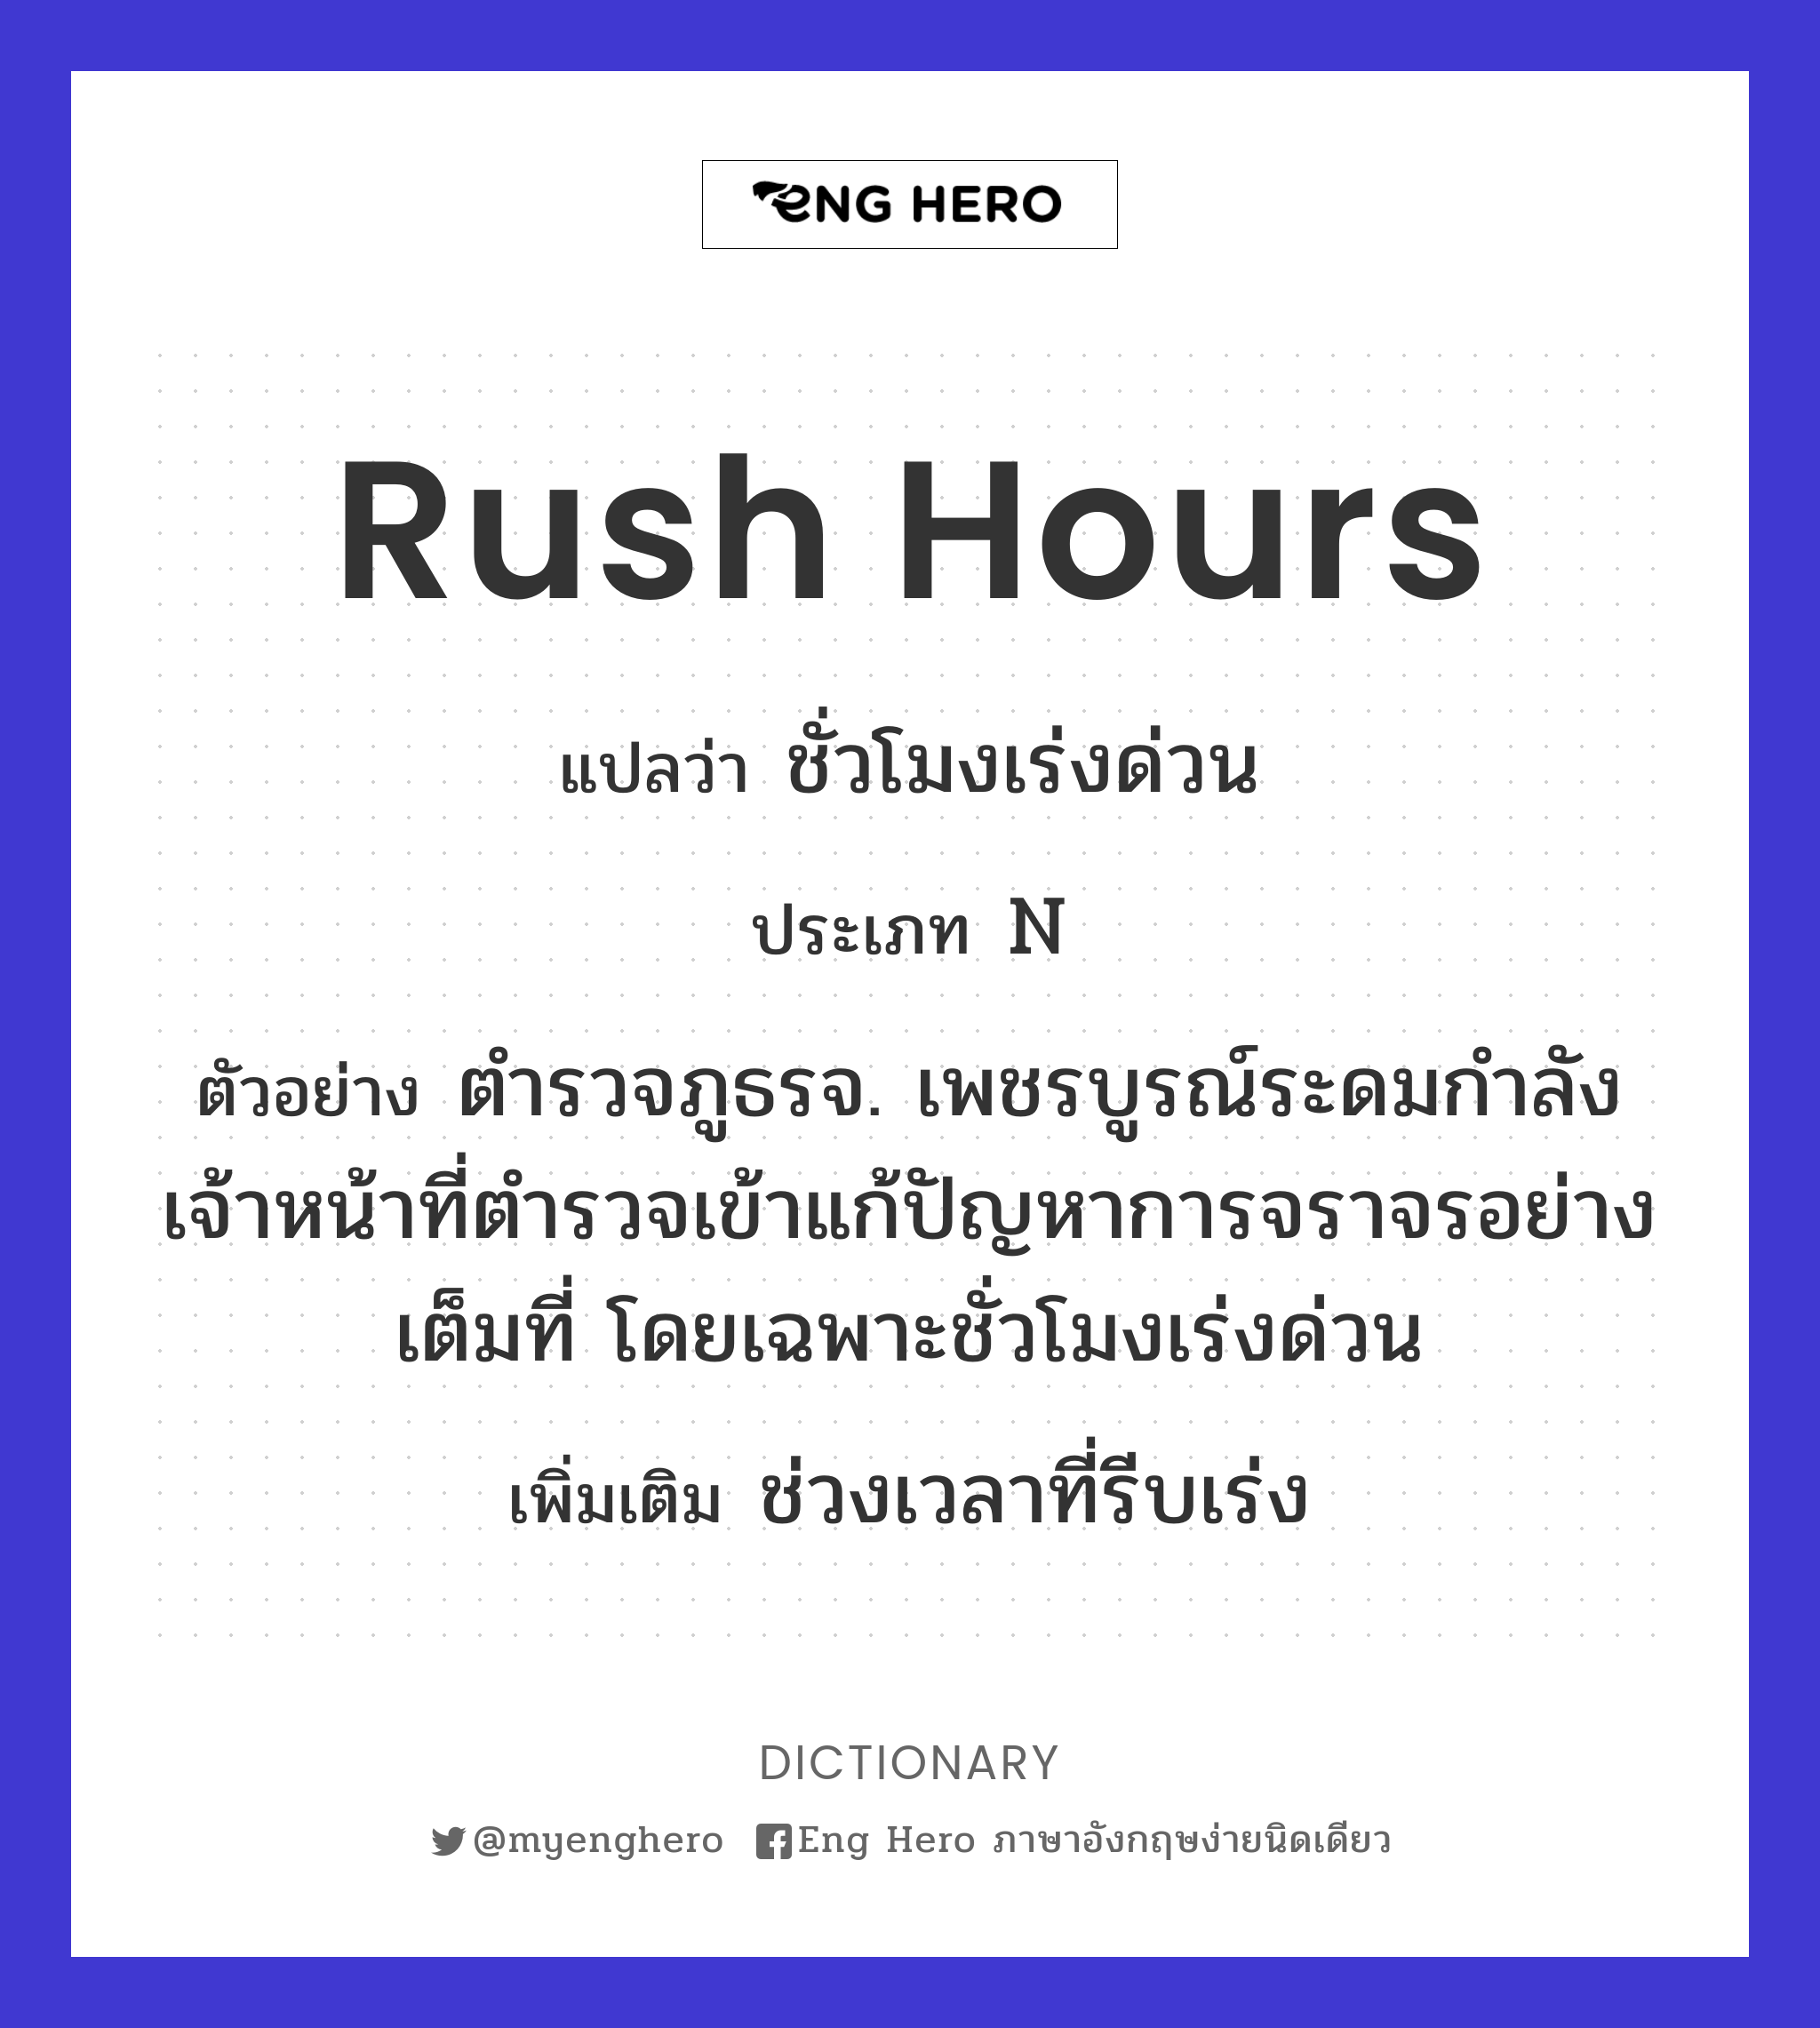 rush hours